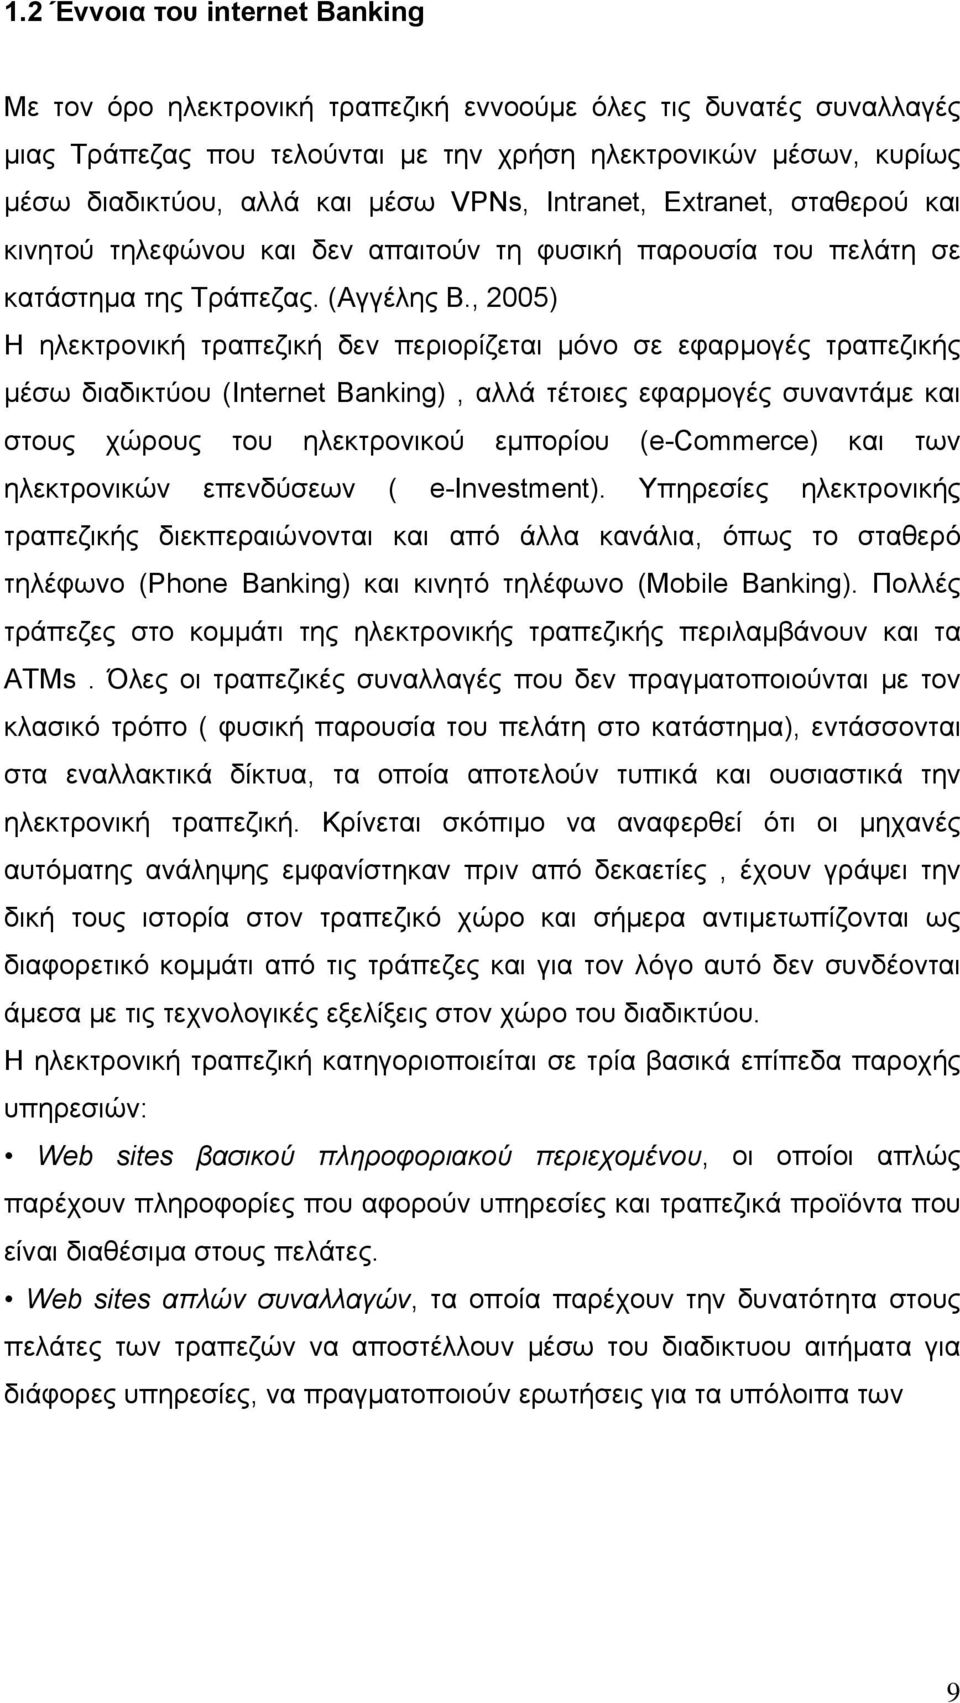 , 2005) Η ηλεκτρονική τραπεζική δεν περιορίζεται μόνο σε εφαρμογές τραπεζικής μέσω διαδικτύου (Internet Banking), αλλά τέτοιες εφαρμογές συναντάμε και στους χώρους του ηλεκτρονικού εμπορίου